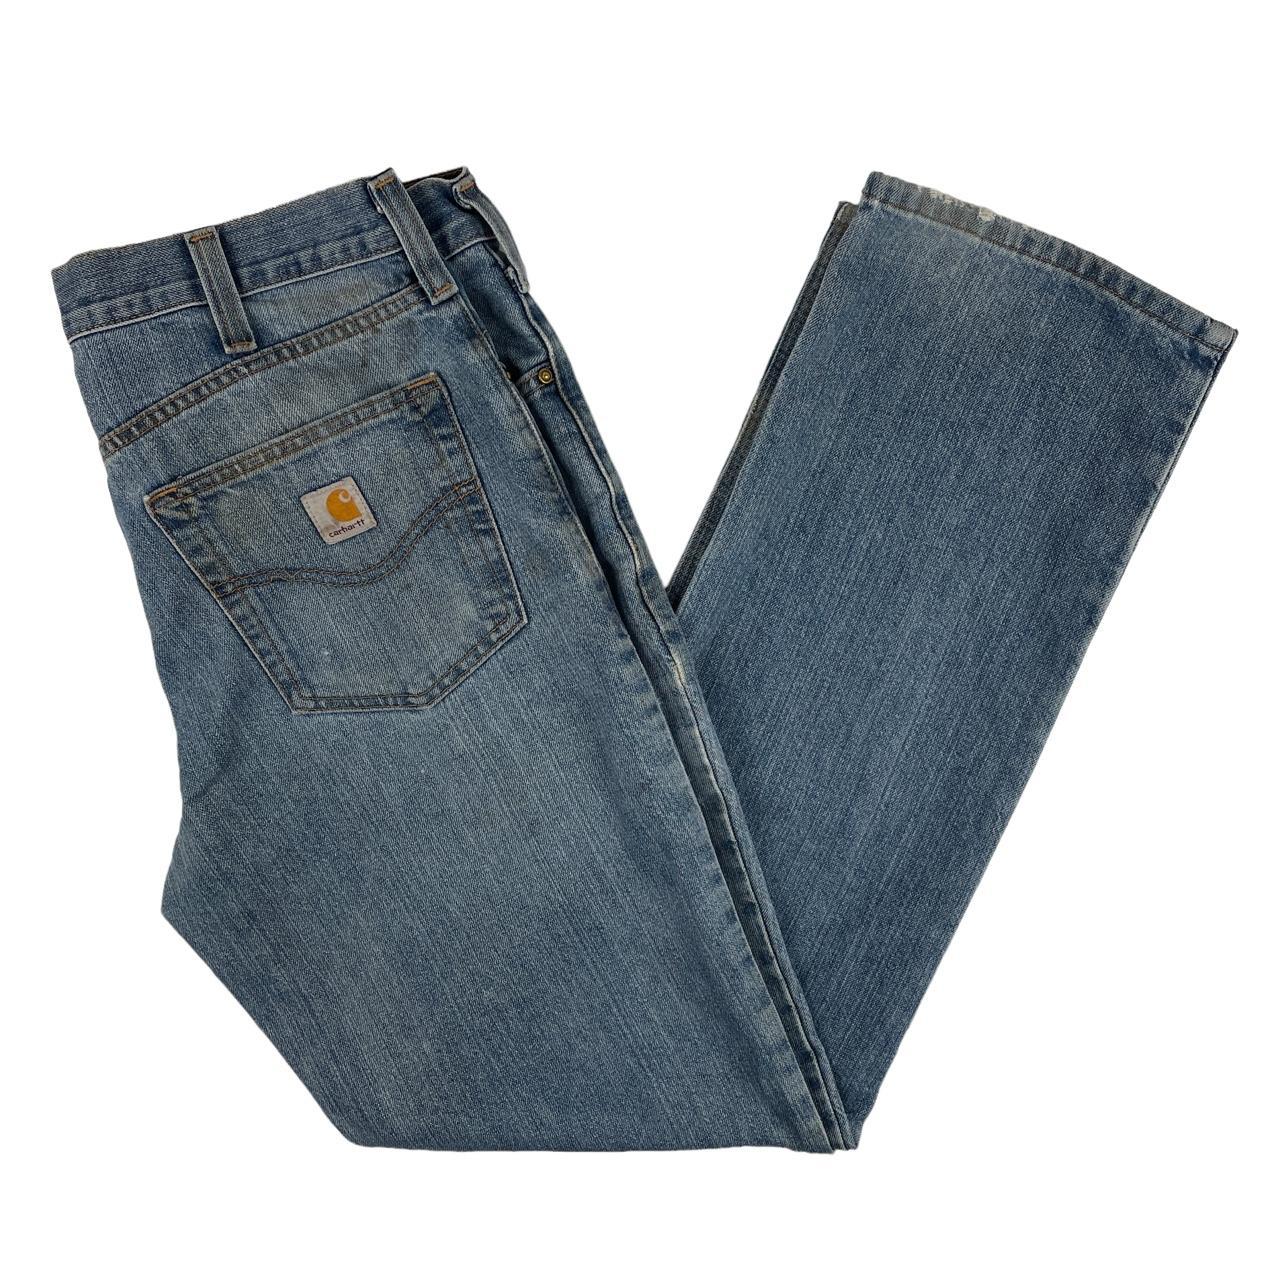 Vintage Carhartt Y2K Style Distressed Workwear Jeans... - Depop